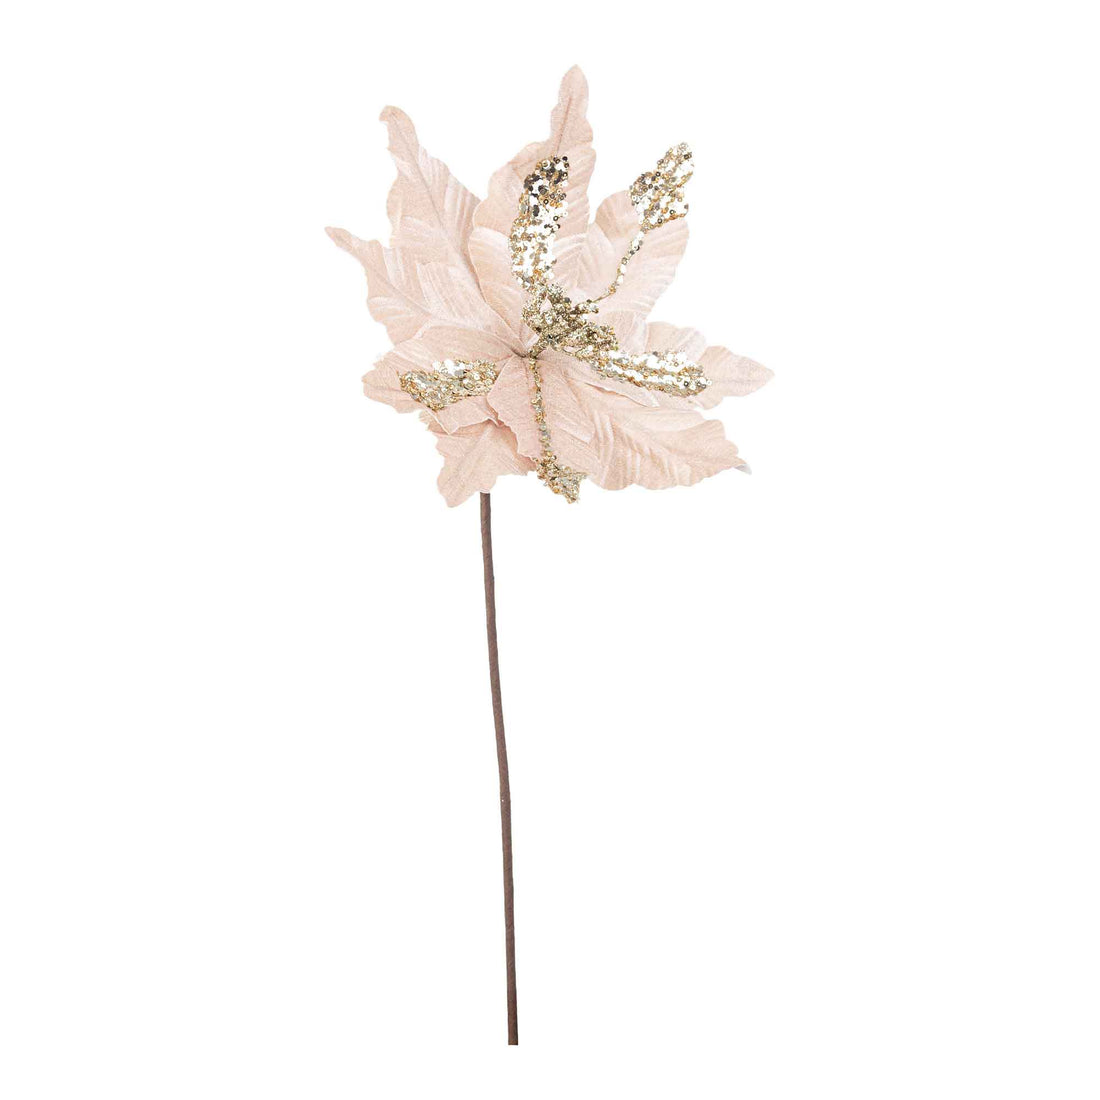 BIZZOTTO Decorazione Natalizia Fiore Poinsettia Cassandra Natale Champagne 50cm